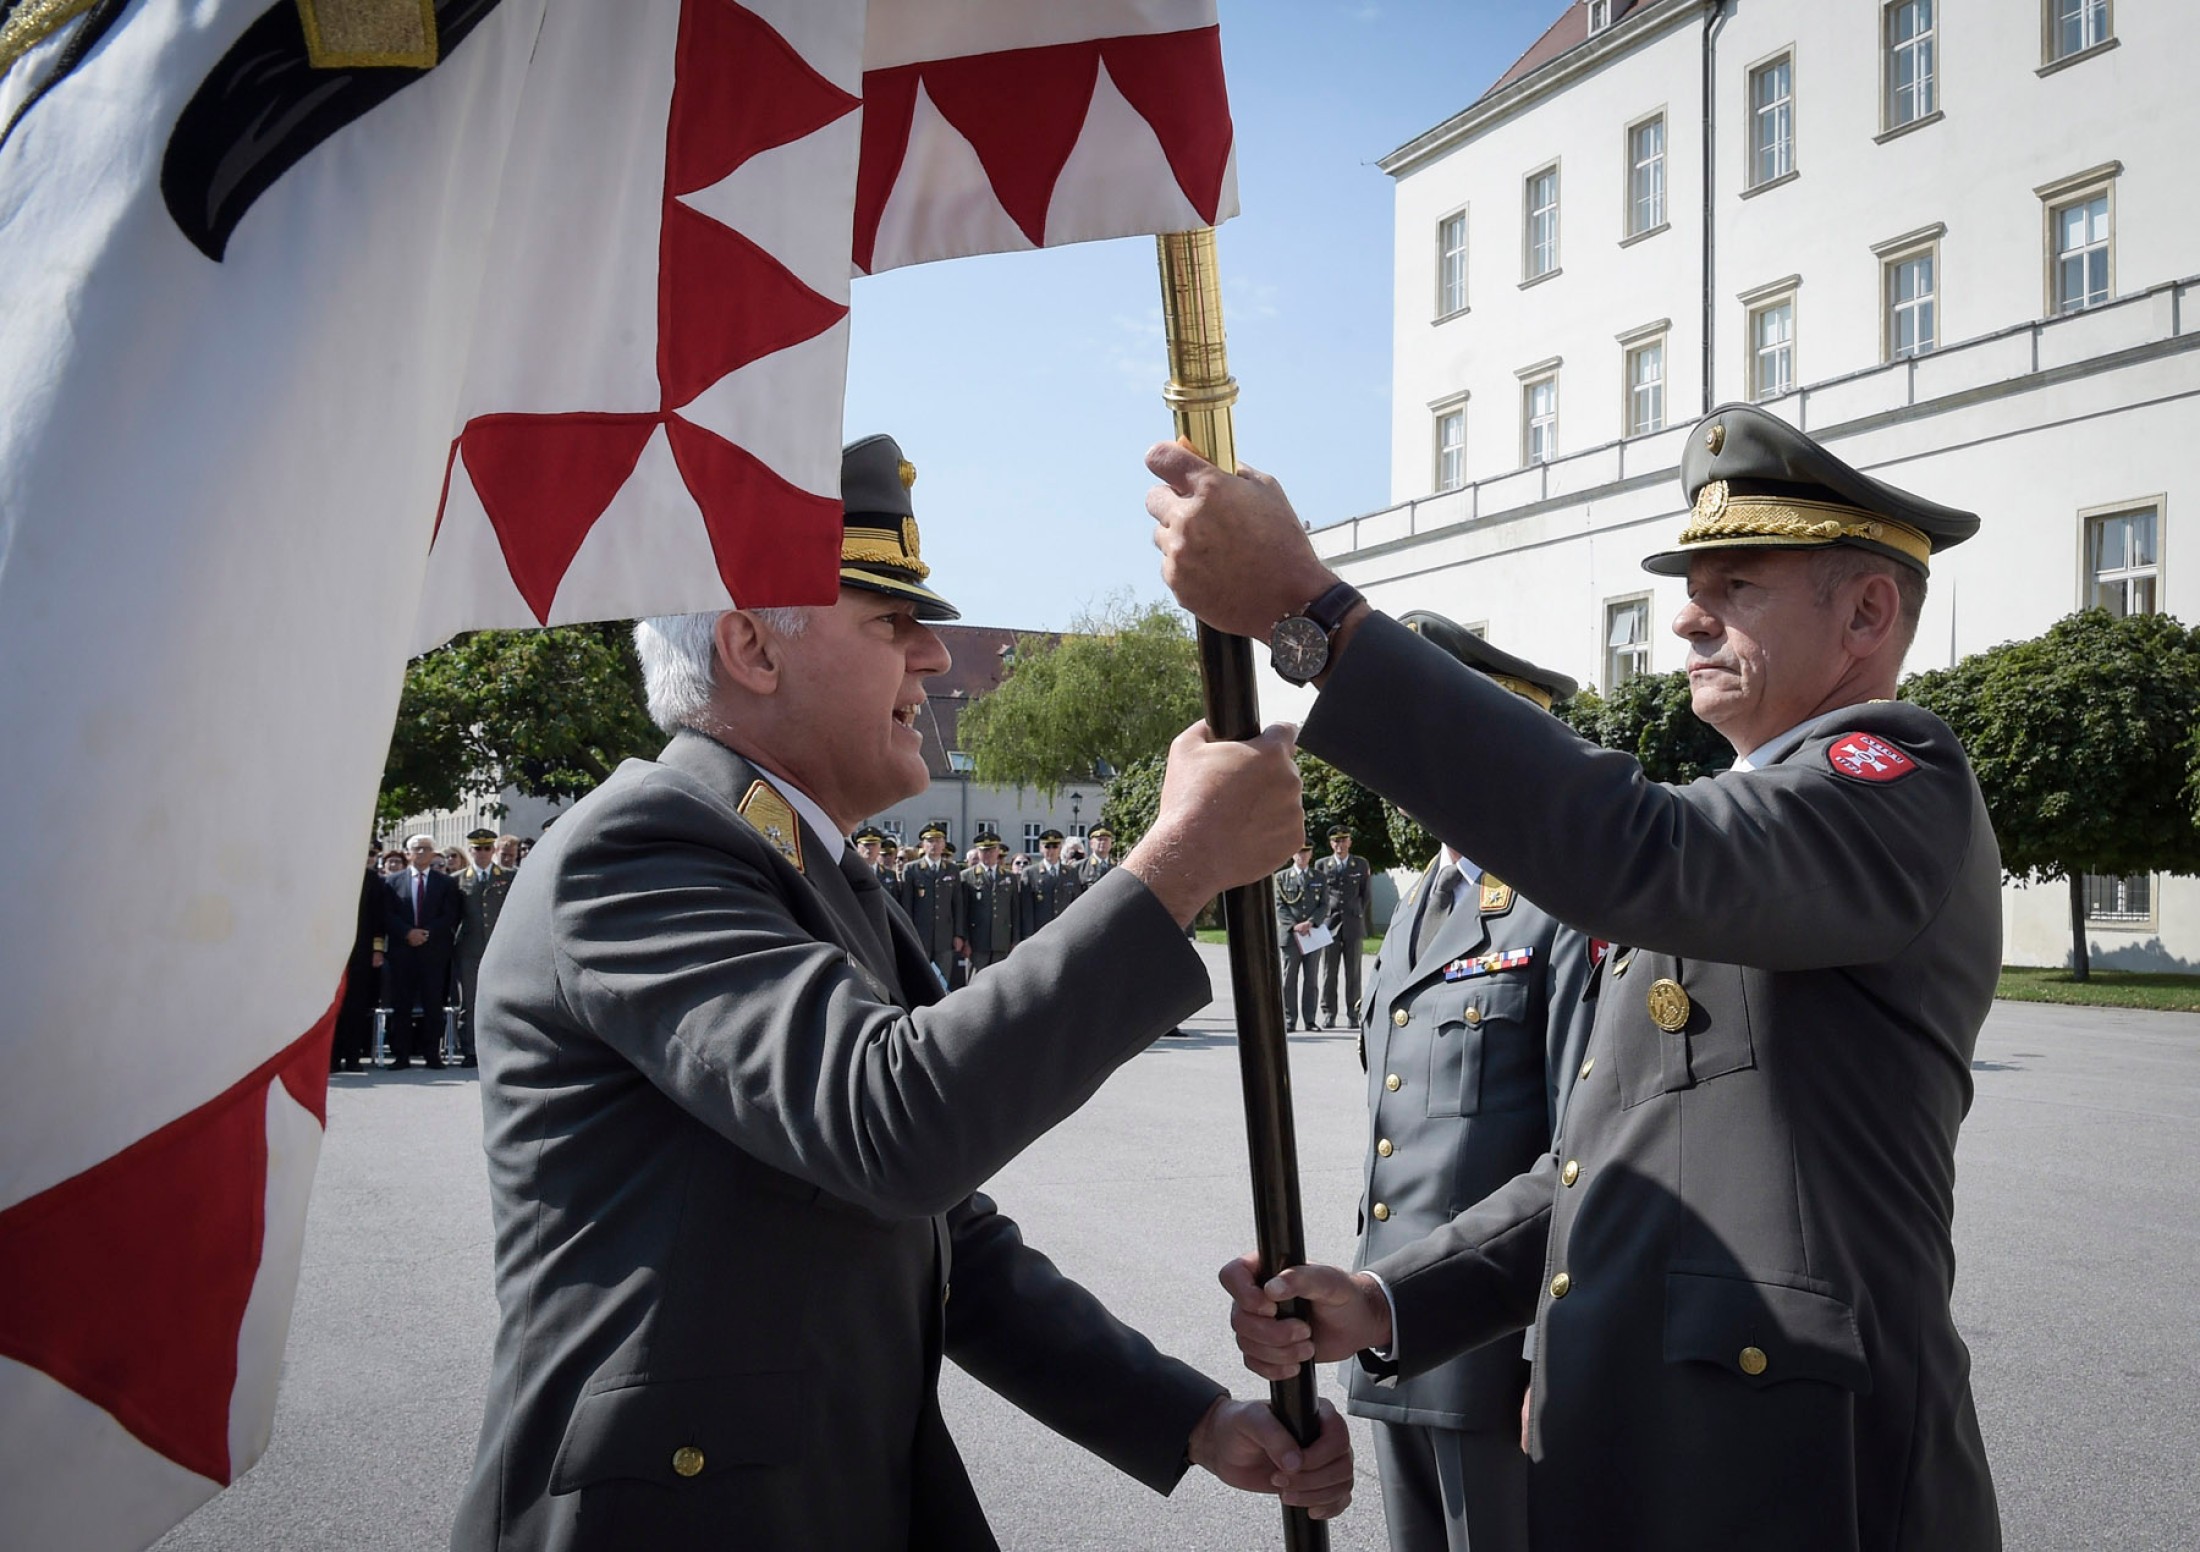 Generalmajor Pronhagl übernimmt die Fahne der Militärakademie.